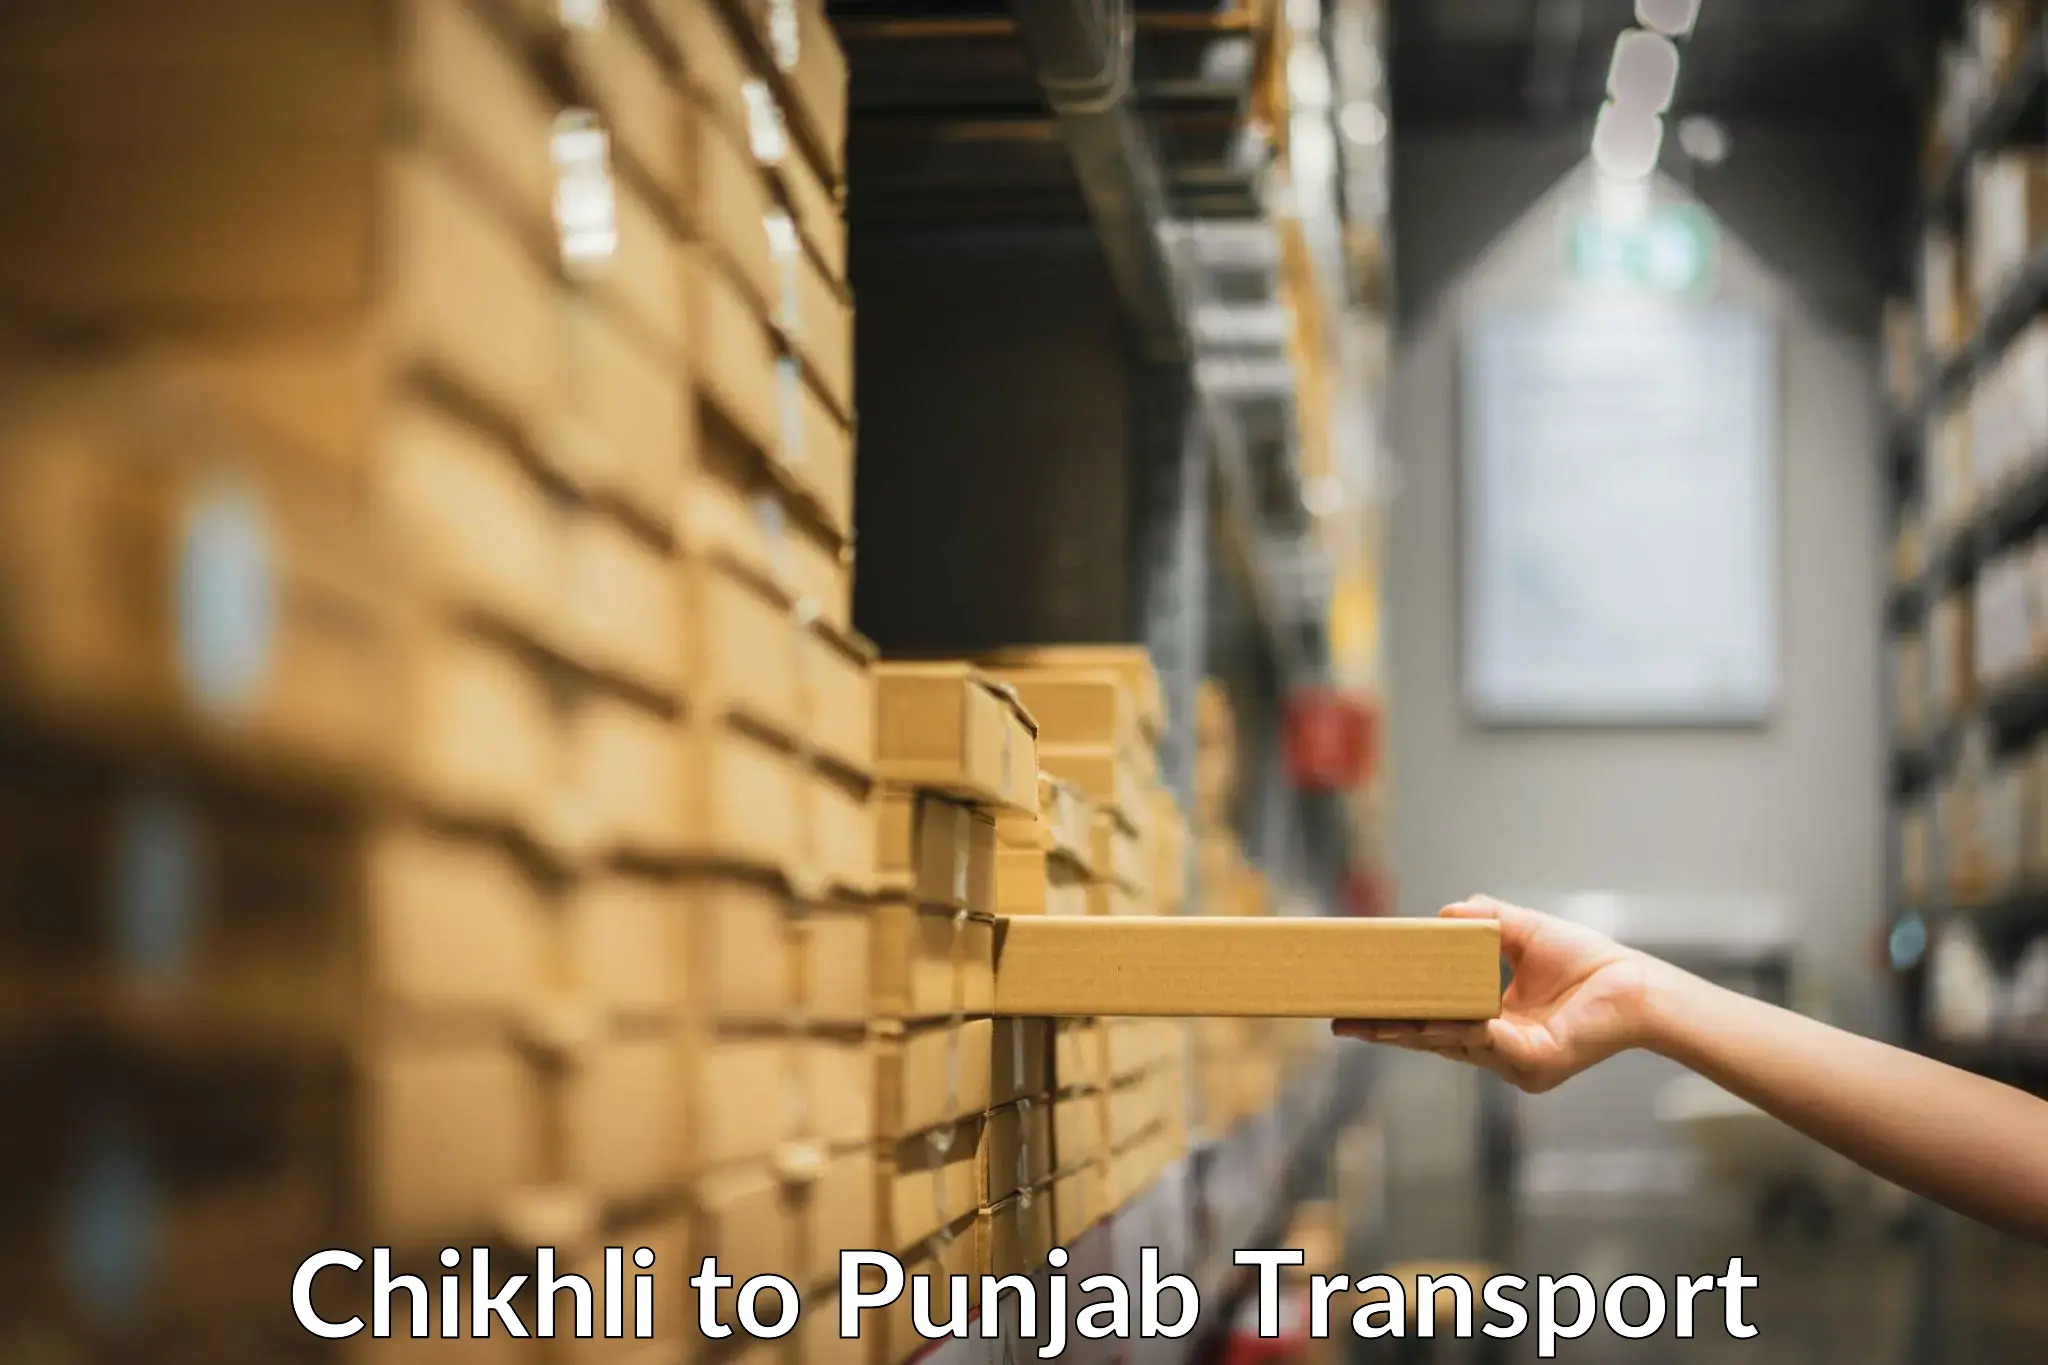 Road transport online services Chikhli to NIT Jallandhar